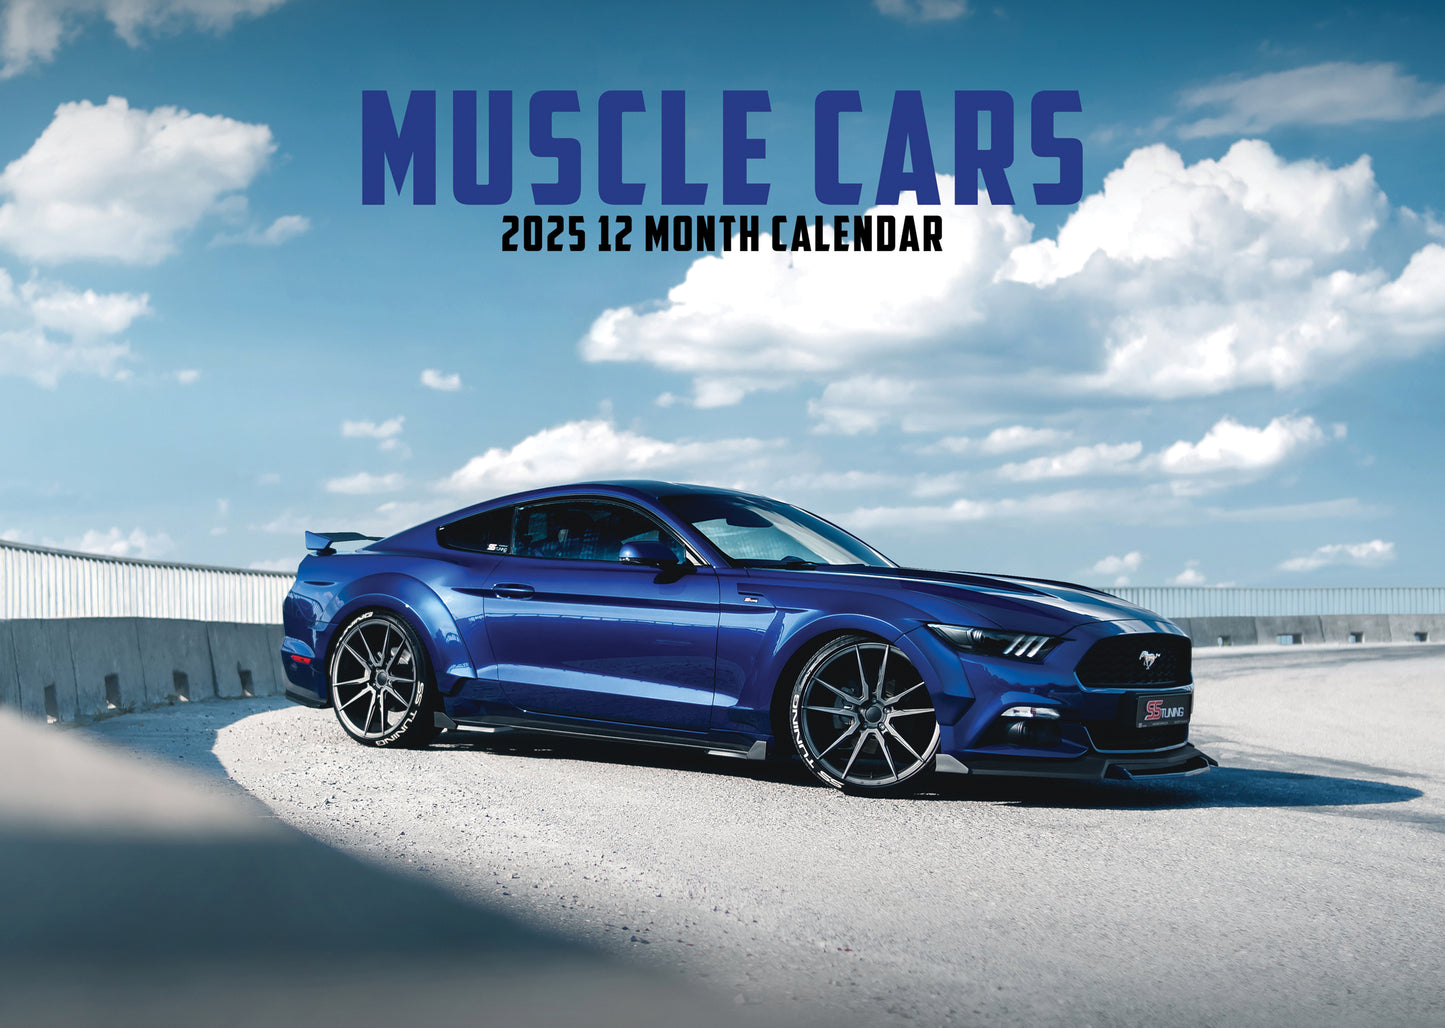 Muscle Cars Calendar 2025 CalendarsRus